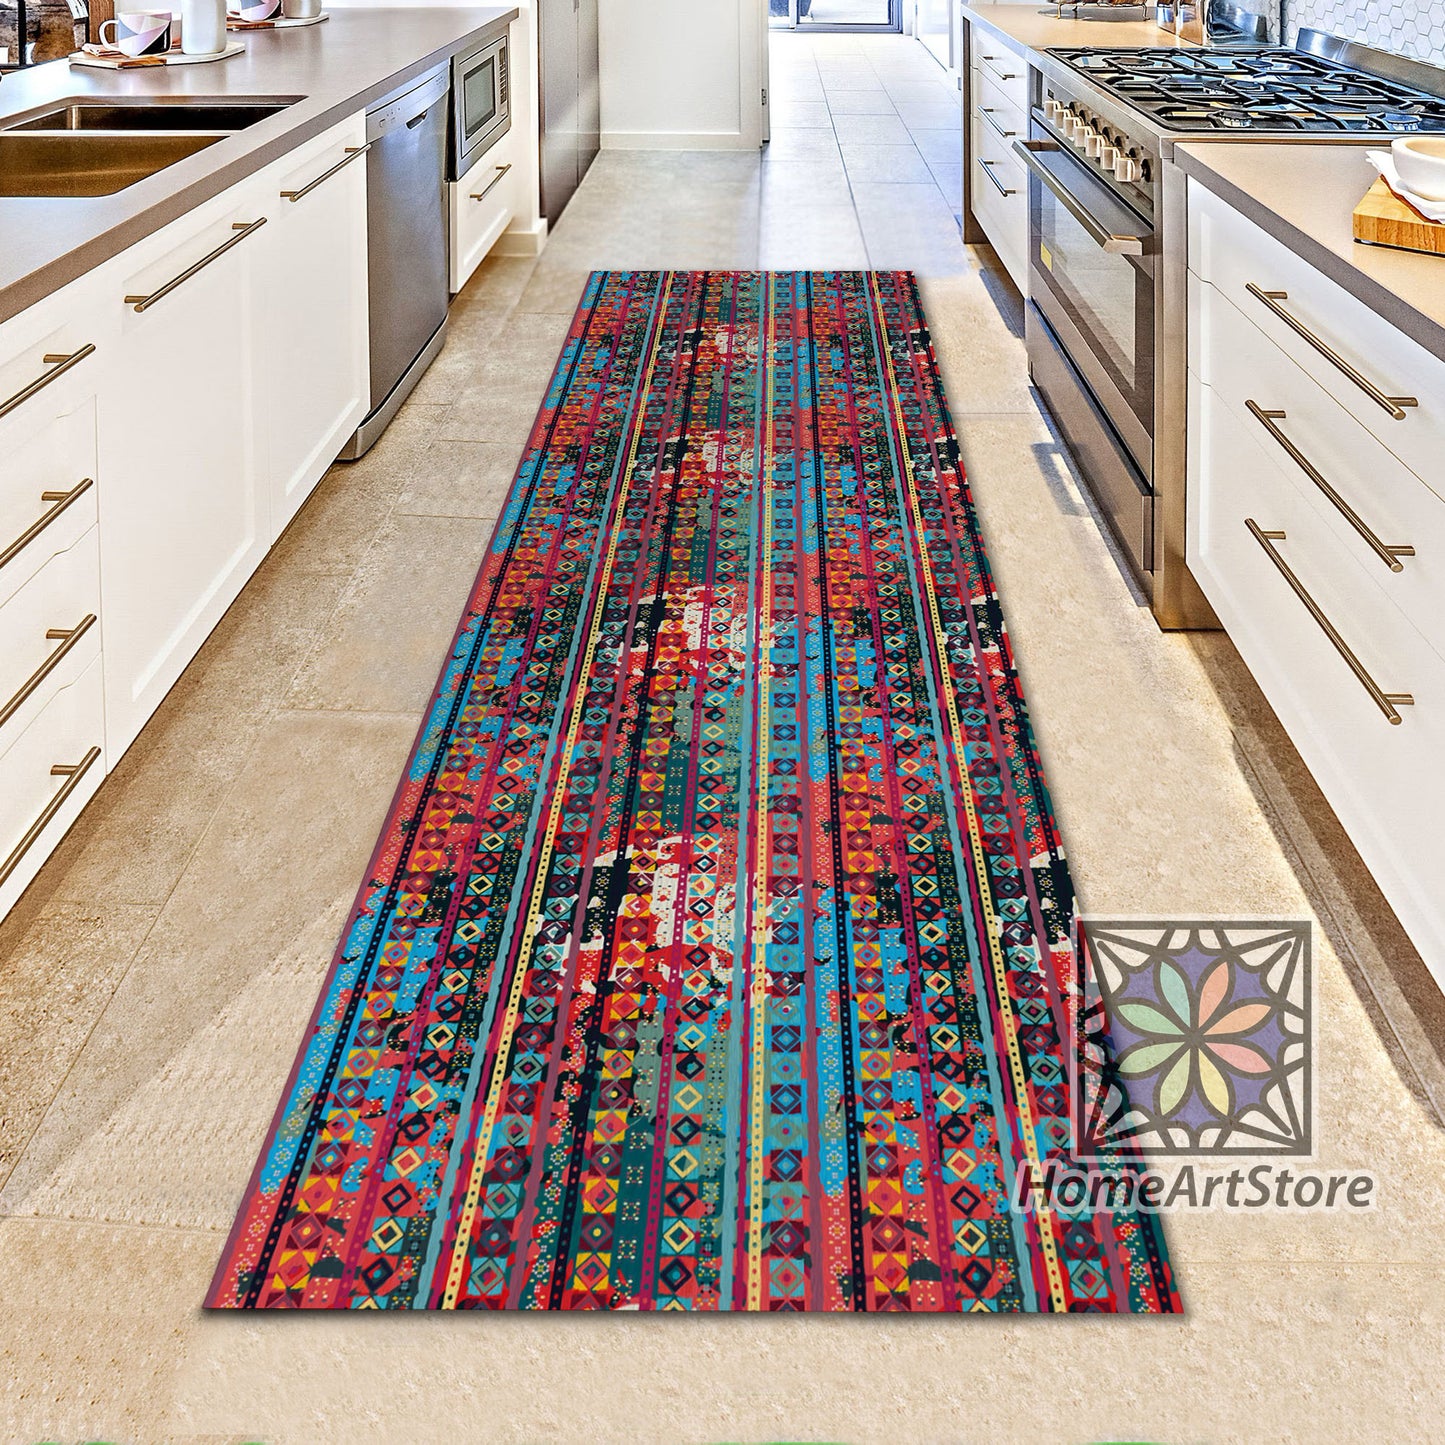 Ethnic Boho Runner Rug, Colorful Kitchen Runner Carpet, Geometric Hallway Runner Rug, Tribal Home Decor